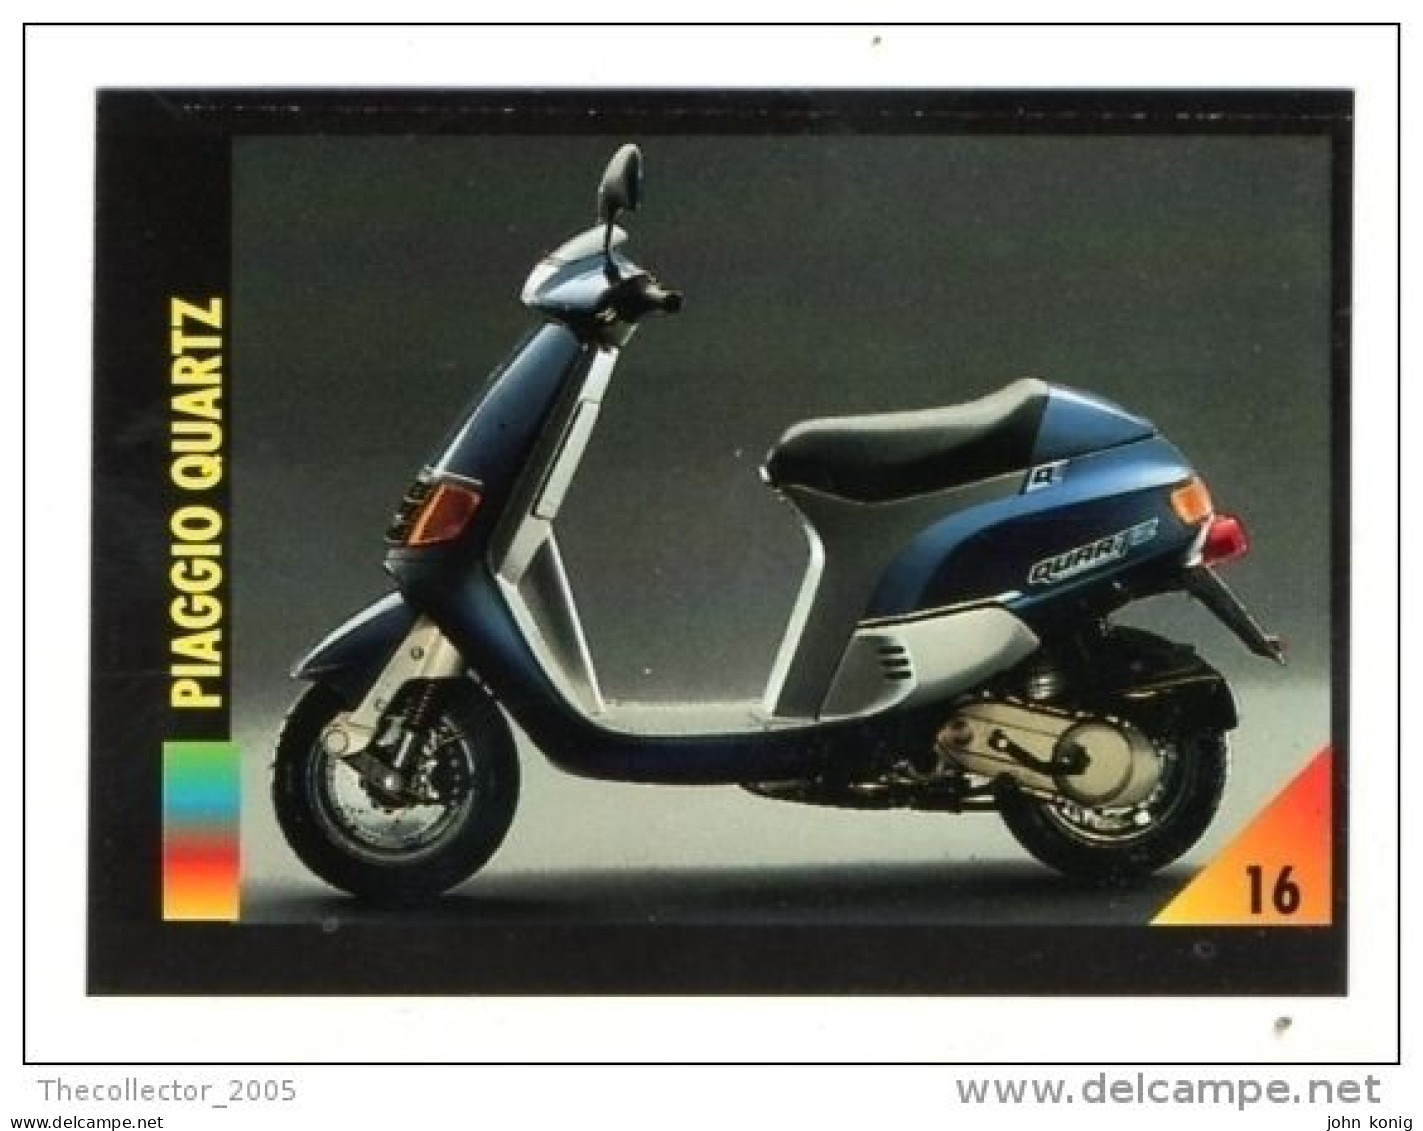 FIGURINA TRADING CARDS - LA MIA MOTO - MY MOTORBIKE - MASTERS EDIZIONI (1993) - PIAGGIO QUARTZ - Auto & Verkehr